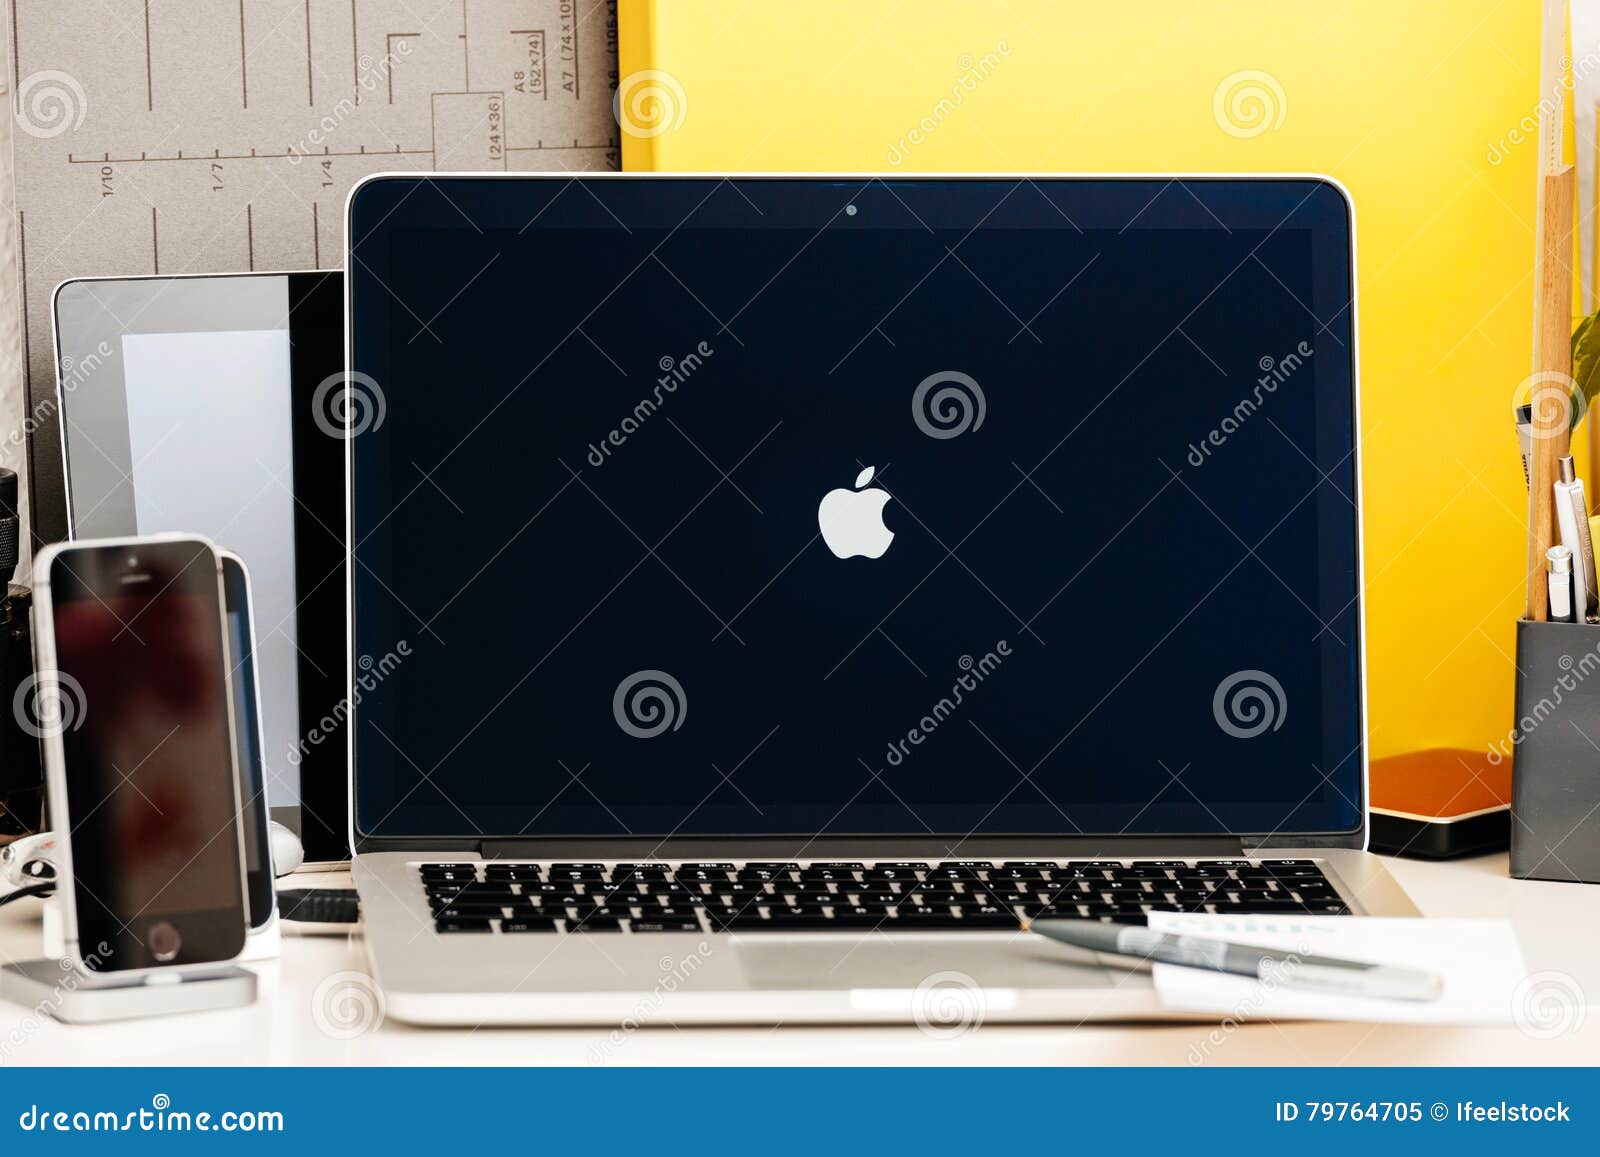 Apple-Embleem op MacBook Pro OLED. PARIJS, FRANKRIJK - OCT 28 2016: Apple-Computerswebsite op nieuwe MacBook Pro-Retina met OLED-Aanrakingsbar in geek creatieve ruimte die Apple-Hoofdgedachte demonstreren - logotype Apple-computers op het scherm